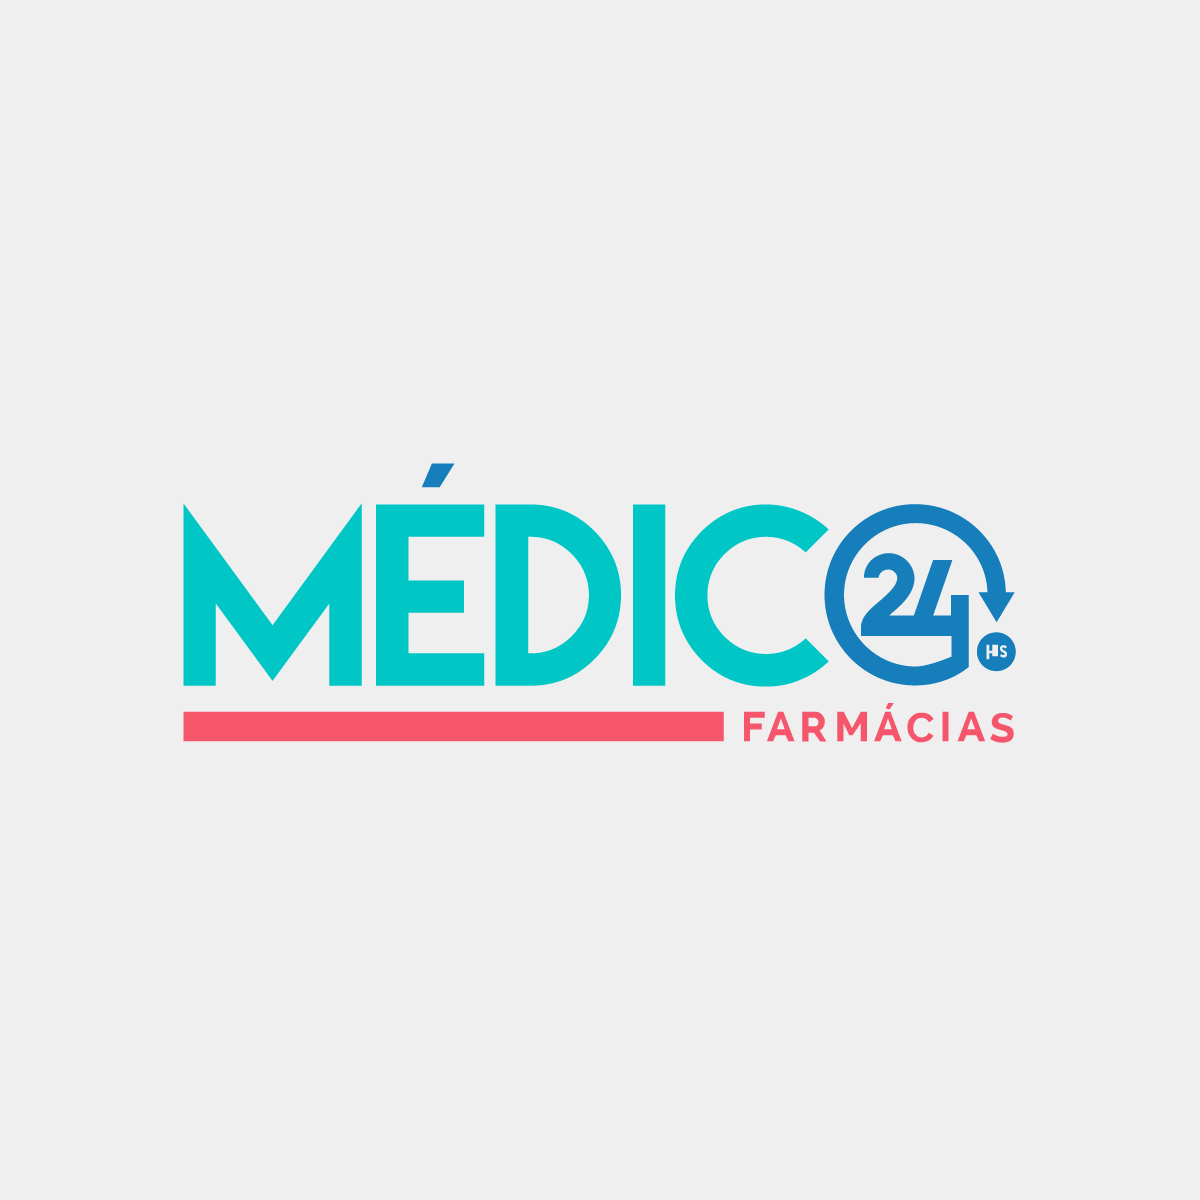 https://brasiltelemedicina.com.br/wp-content/uploads/2016/07/Produtos_Medico24hs_Farmácias-1200x1200.png